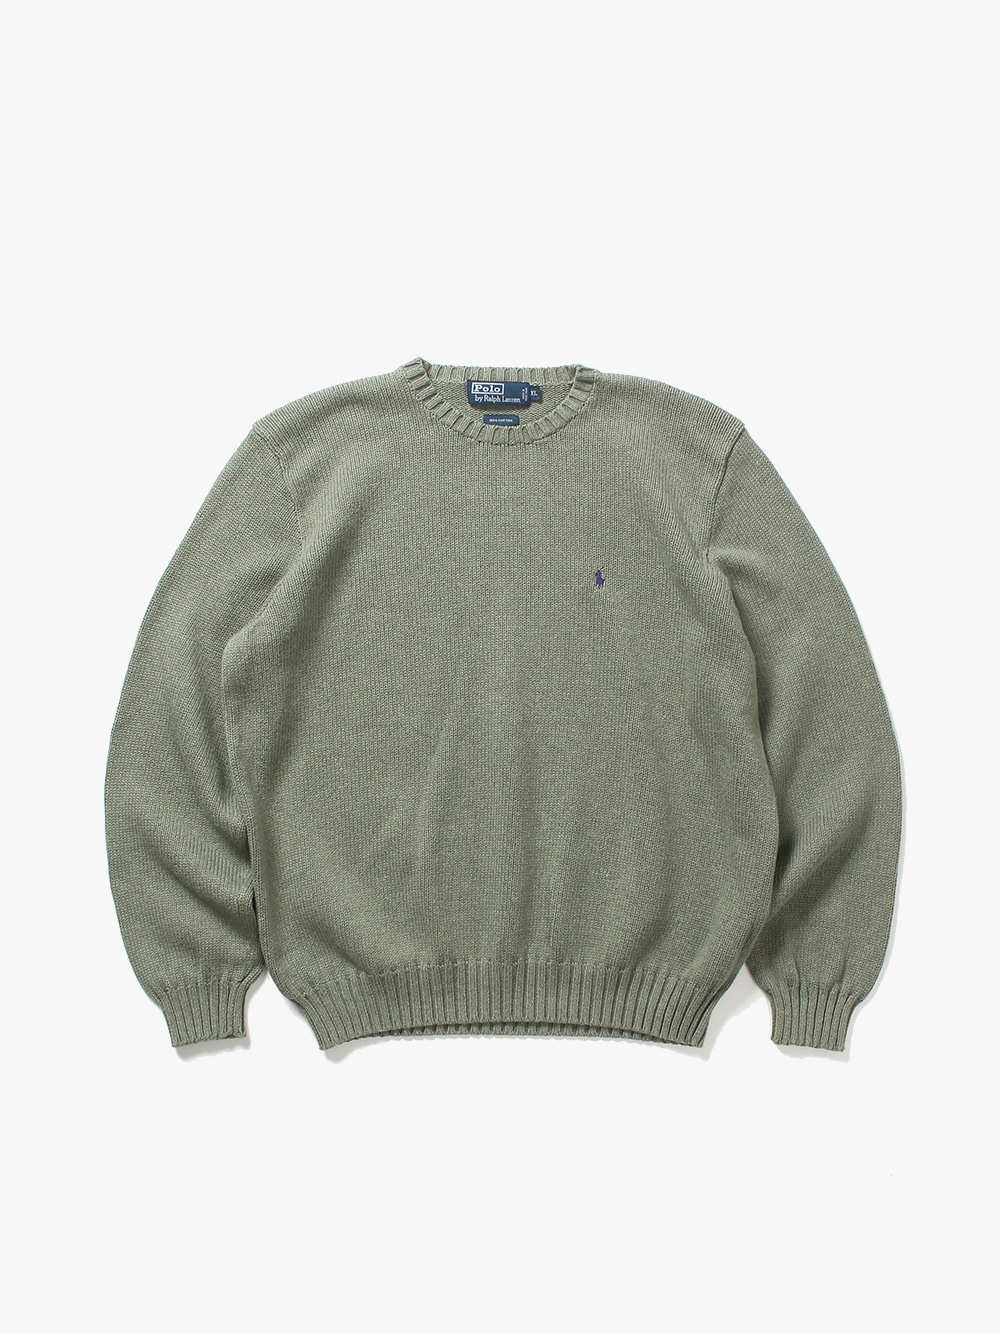 [ XL ] Polo Ralph Lauren Sweater (6447)